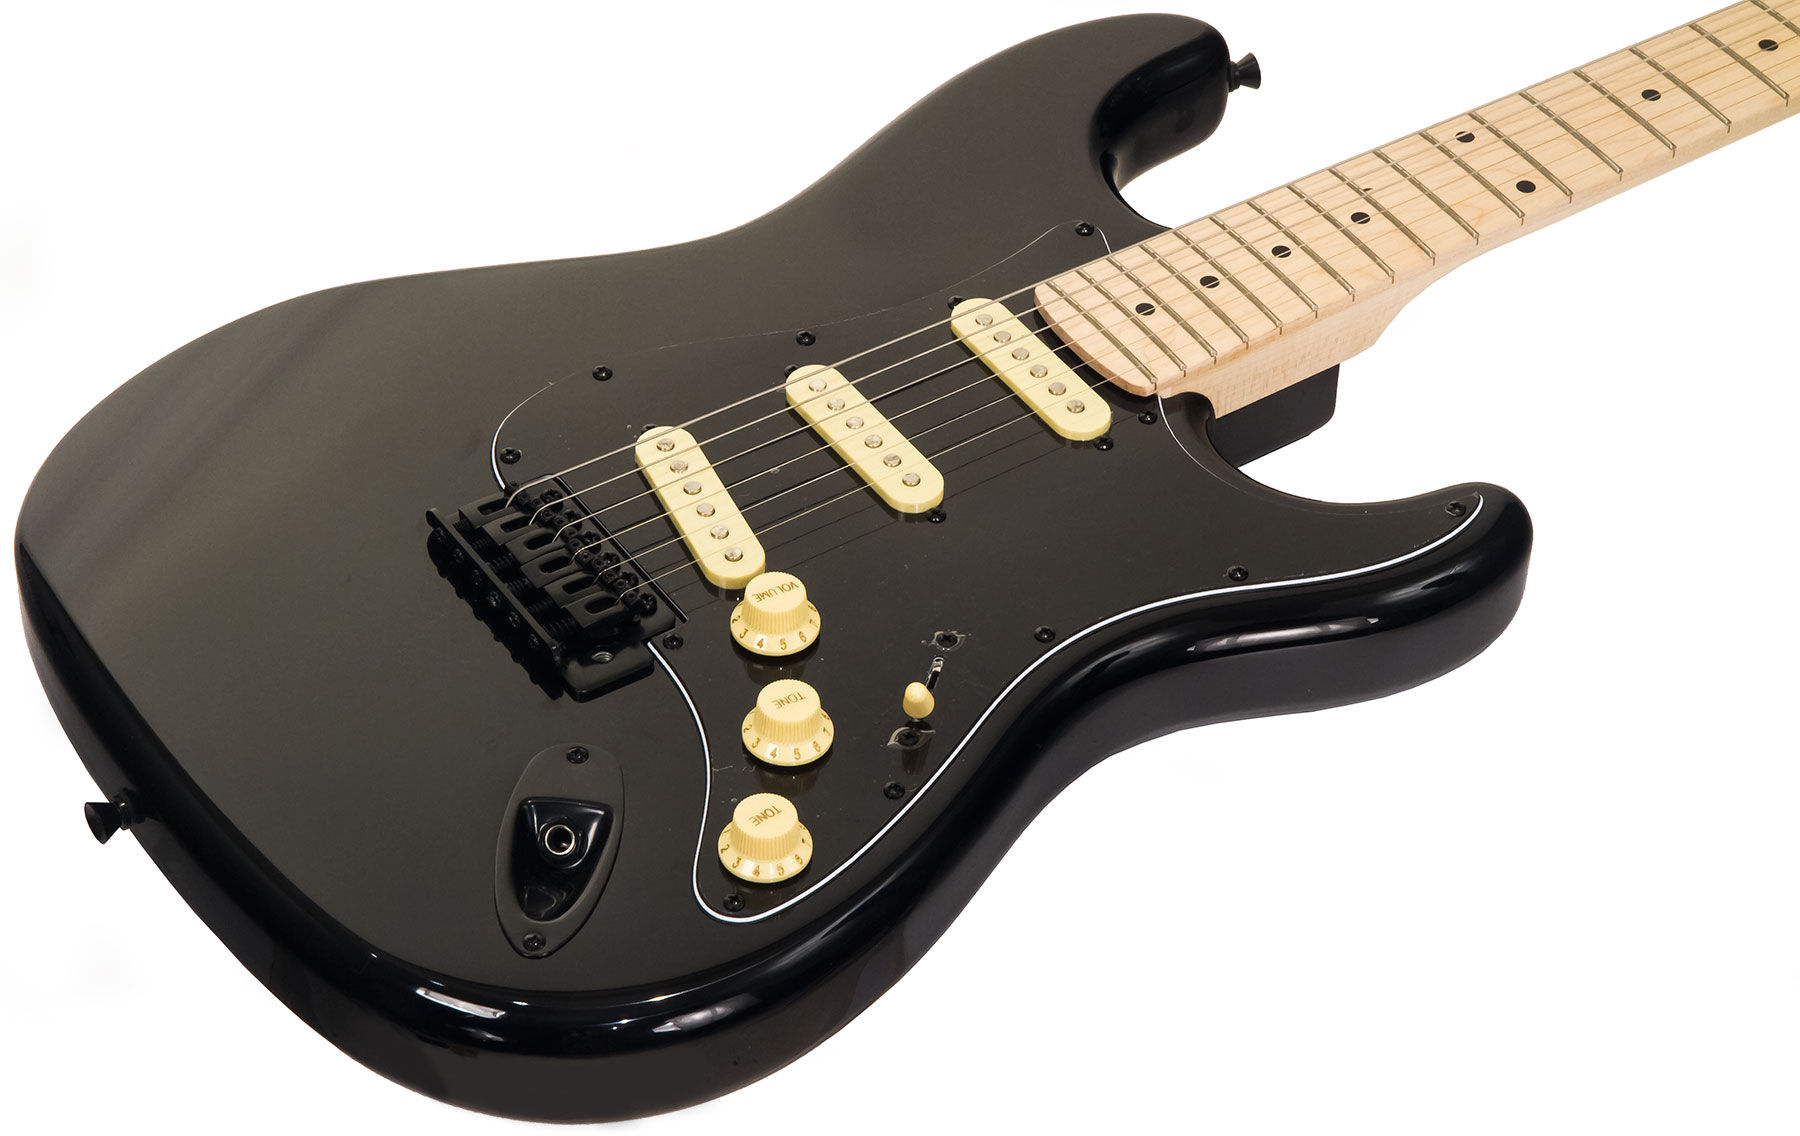 Eastone Str70 Gil Sss Trem Mn - Black - Str shape electric guitar - Variation 1